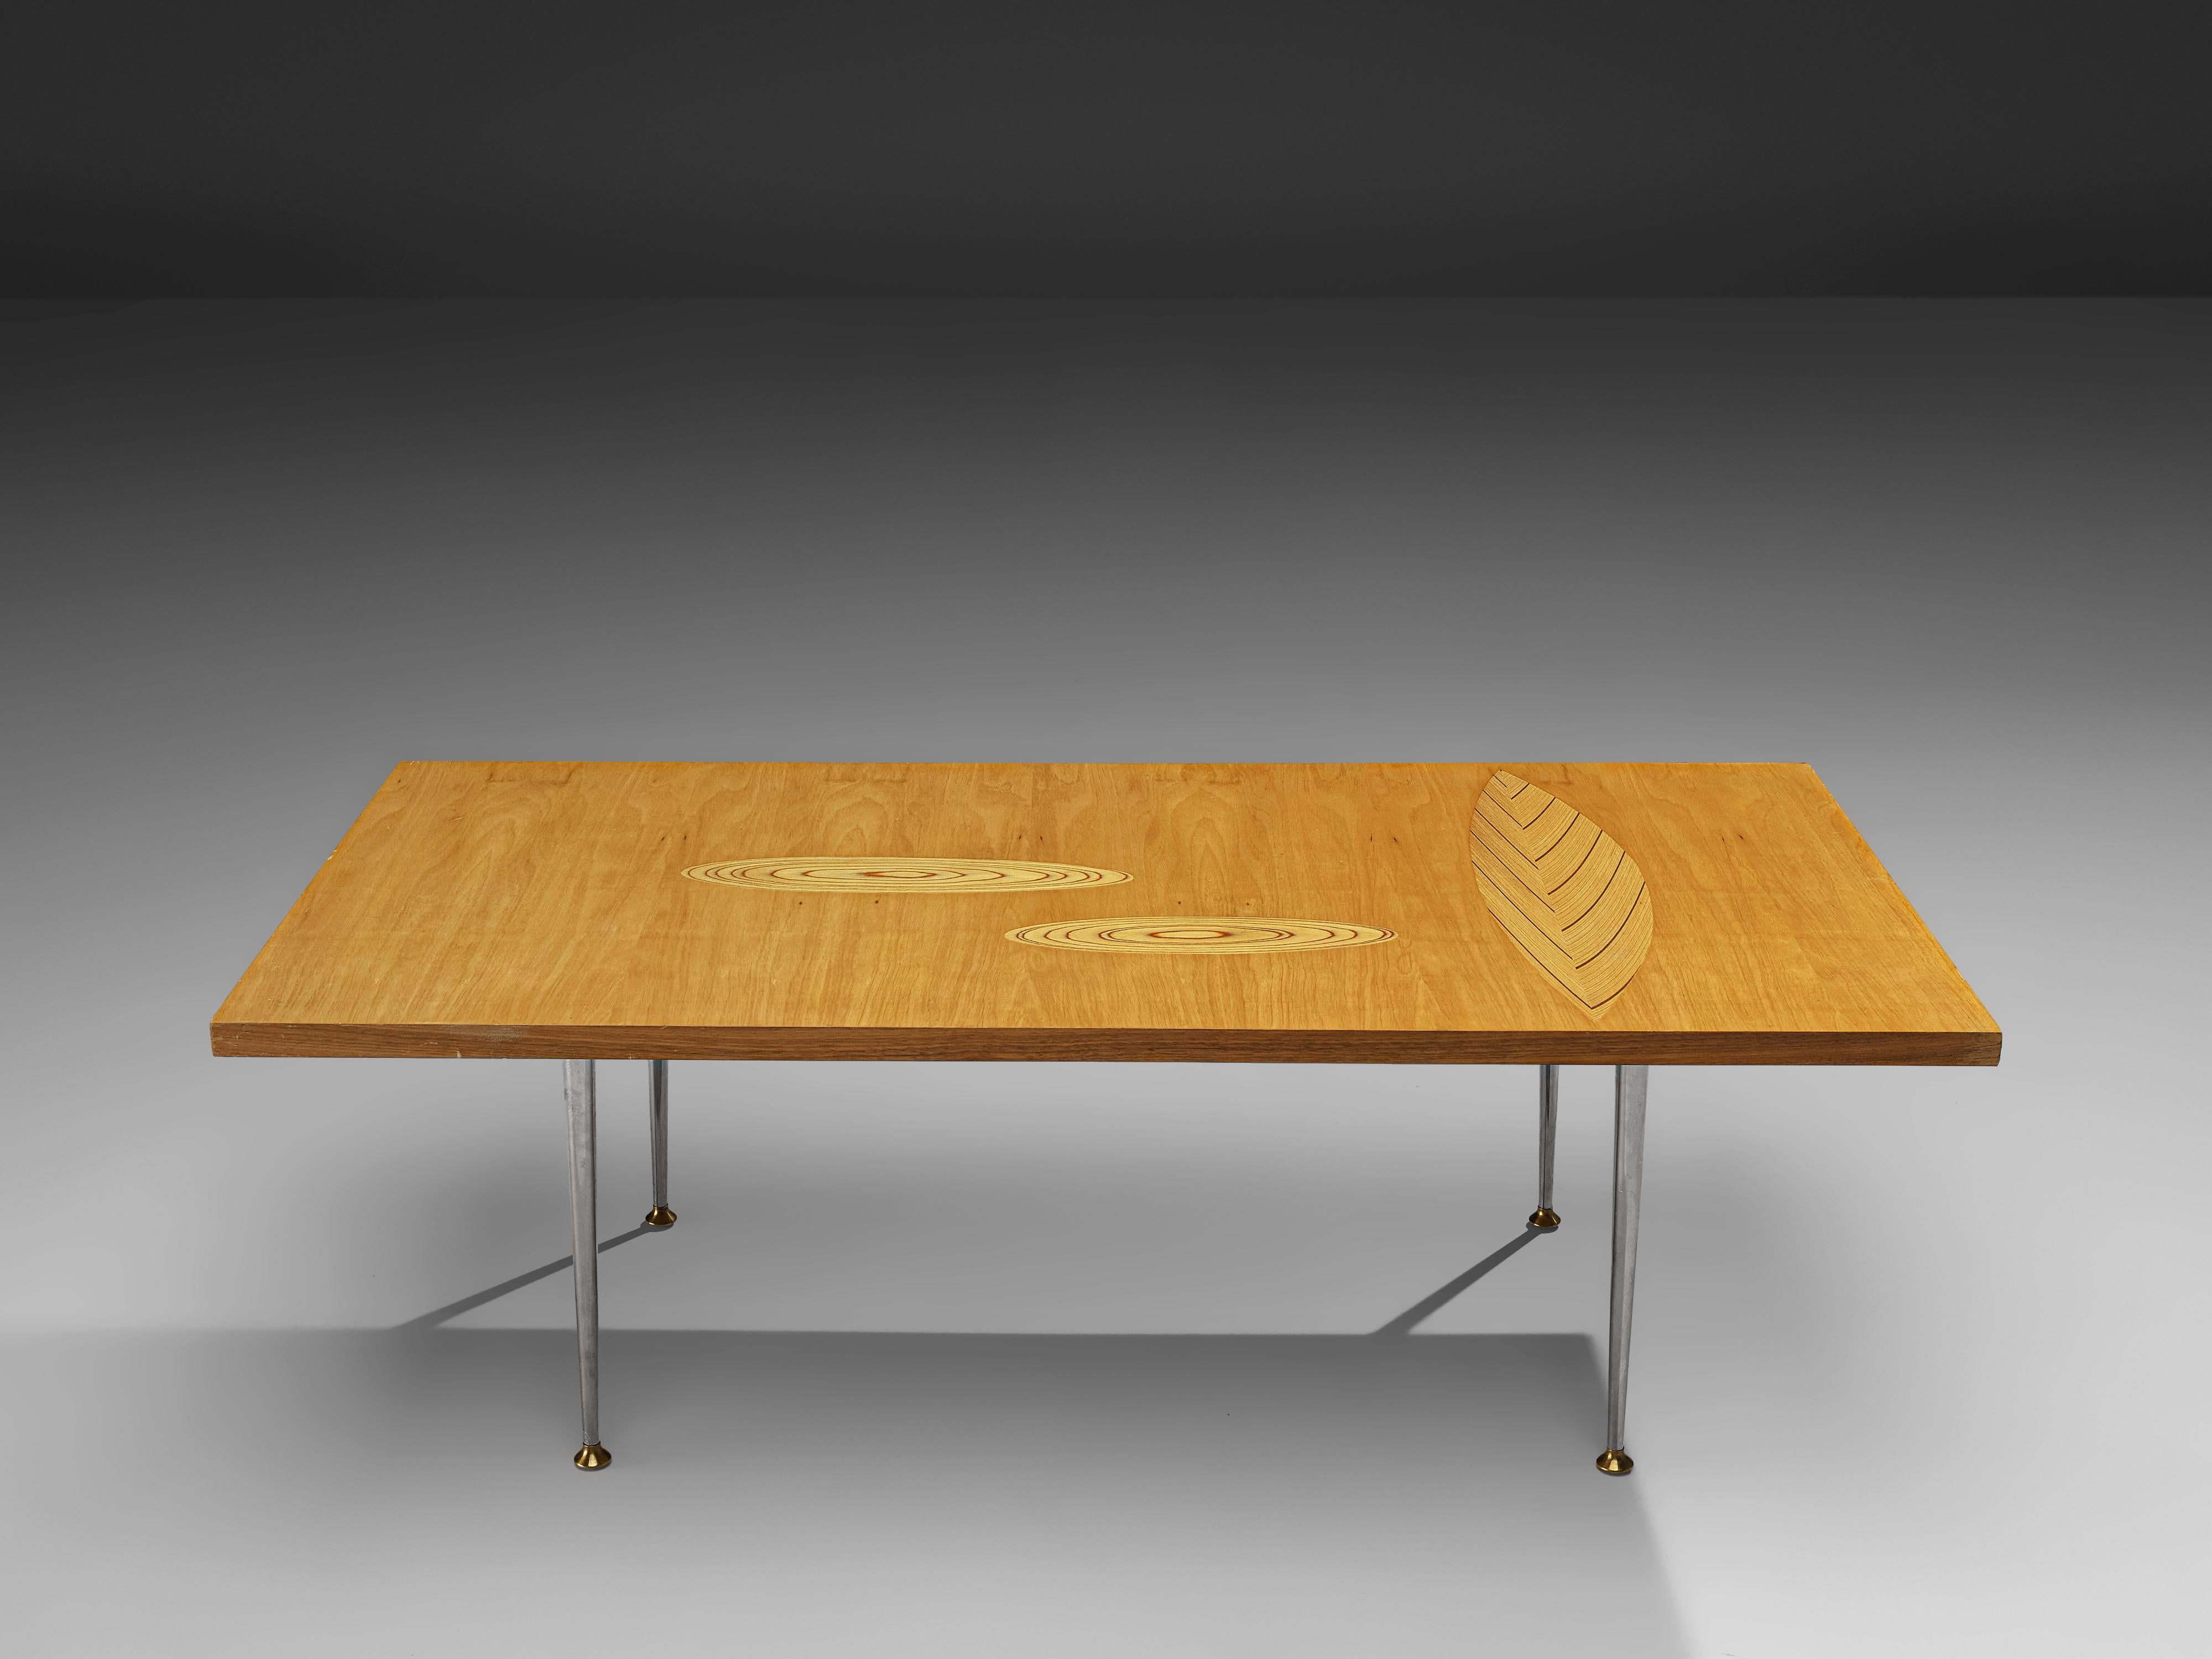 Tapio Wirkkala pour Asko, table d'appoint, bouleau, contreplaqué, acier, laiton, Finlande, années 1960

Table basse avec incrustations en contreplaqué conçue par Tapio Wirkkala, fabriquée par Asko. Cette table basse rectangulaire est l'un des